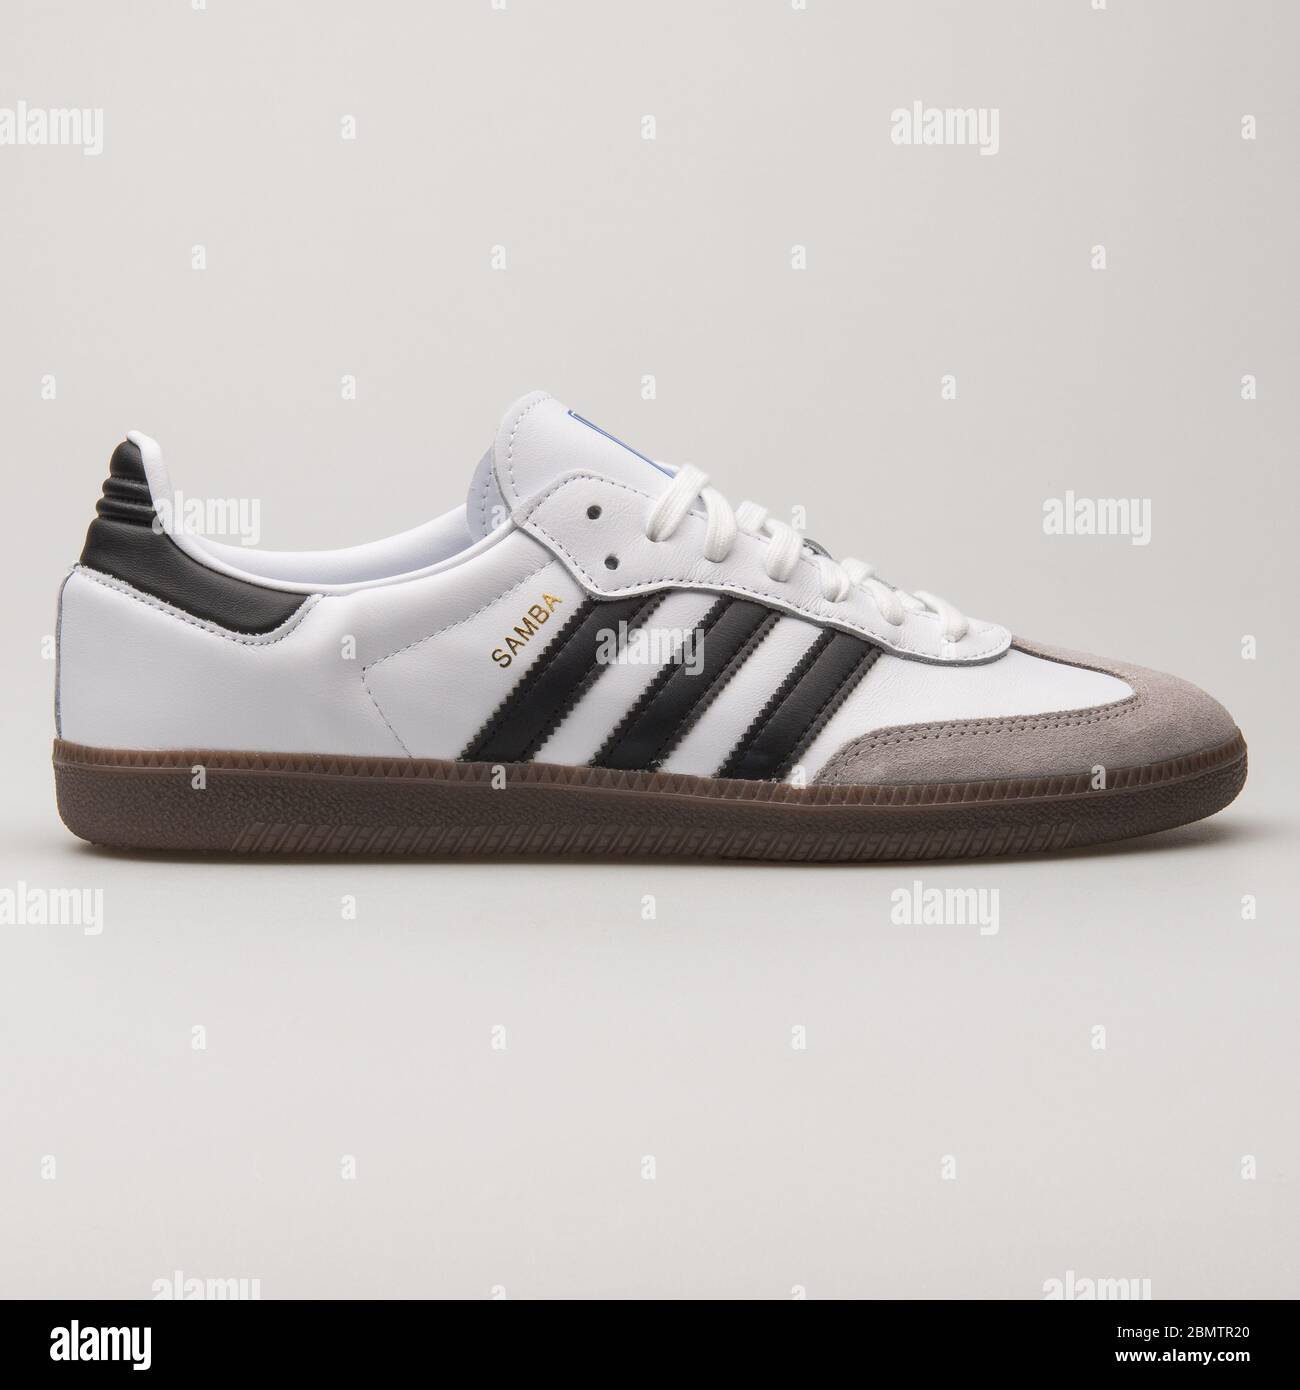 Adidas Samba OG white and black sneaker 